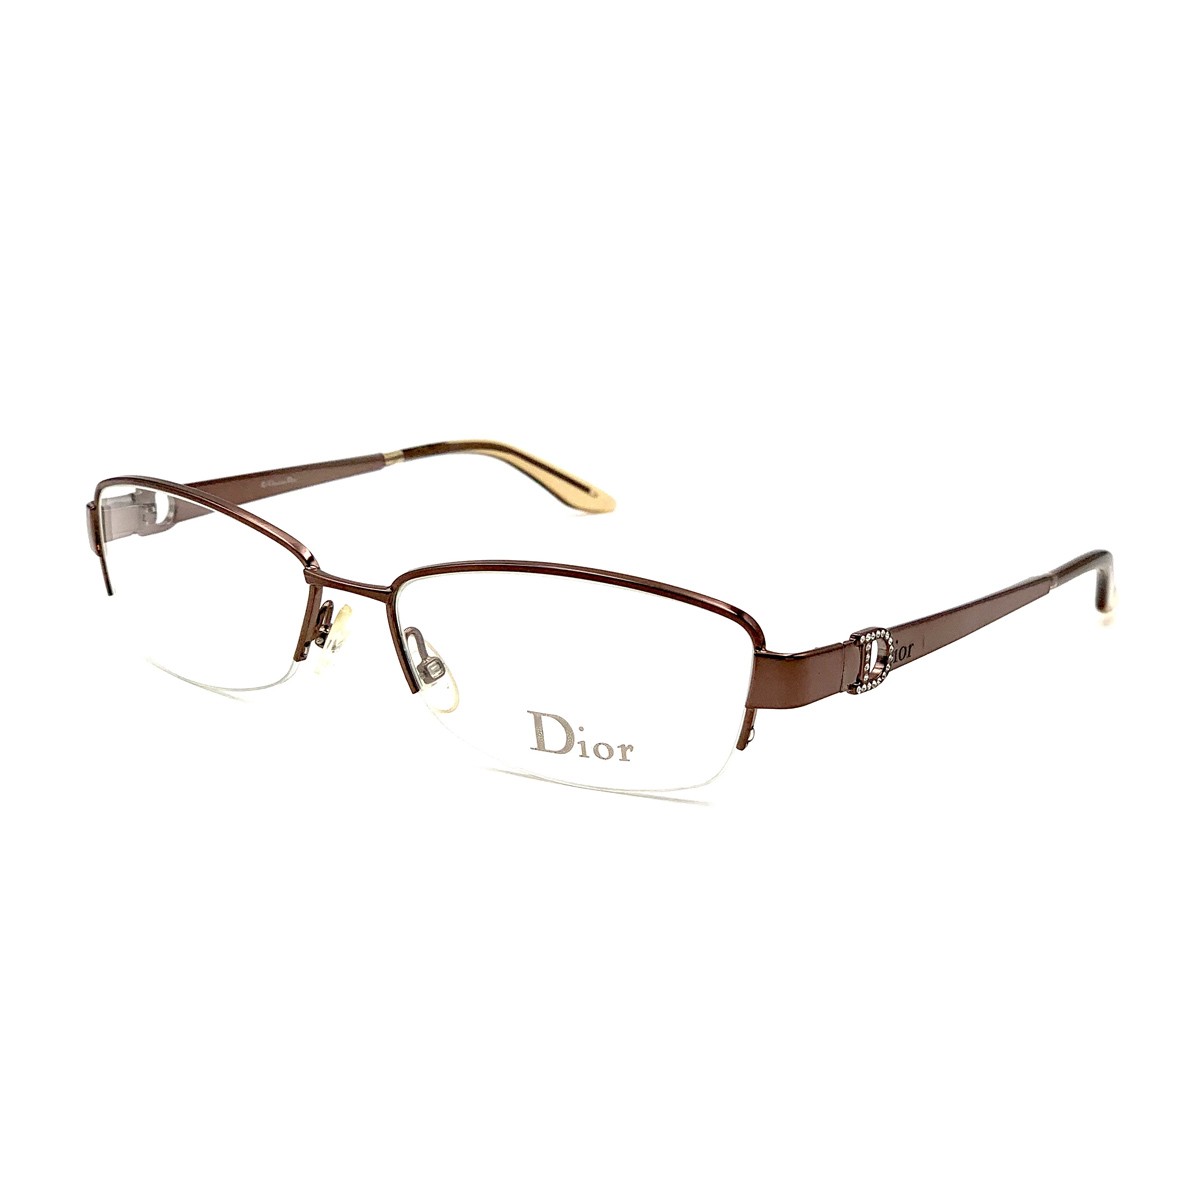 Christian Dior CD3685 | Men's eyeglasses